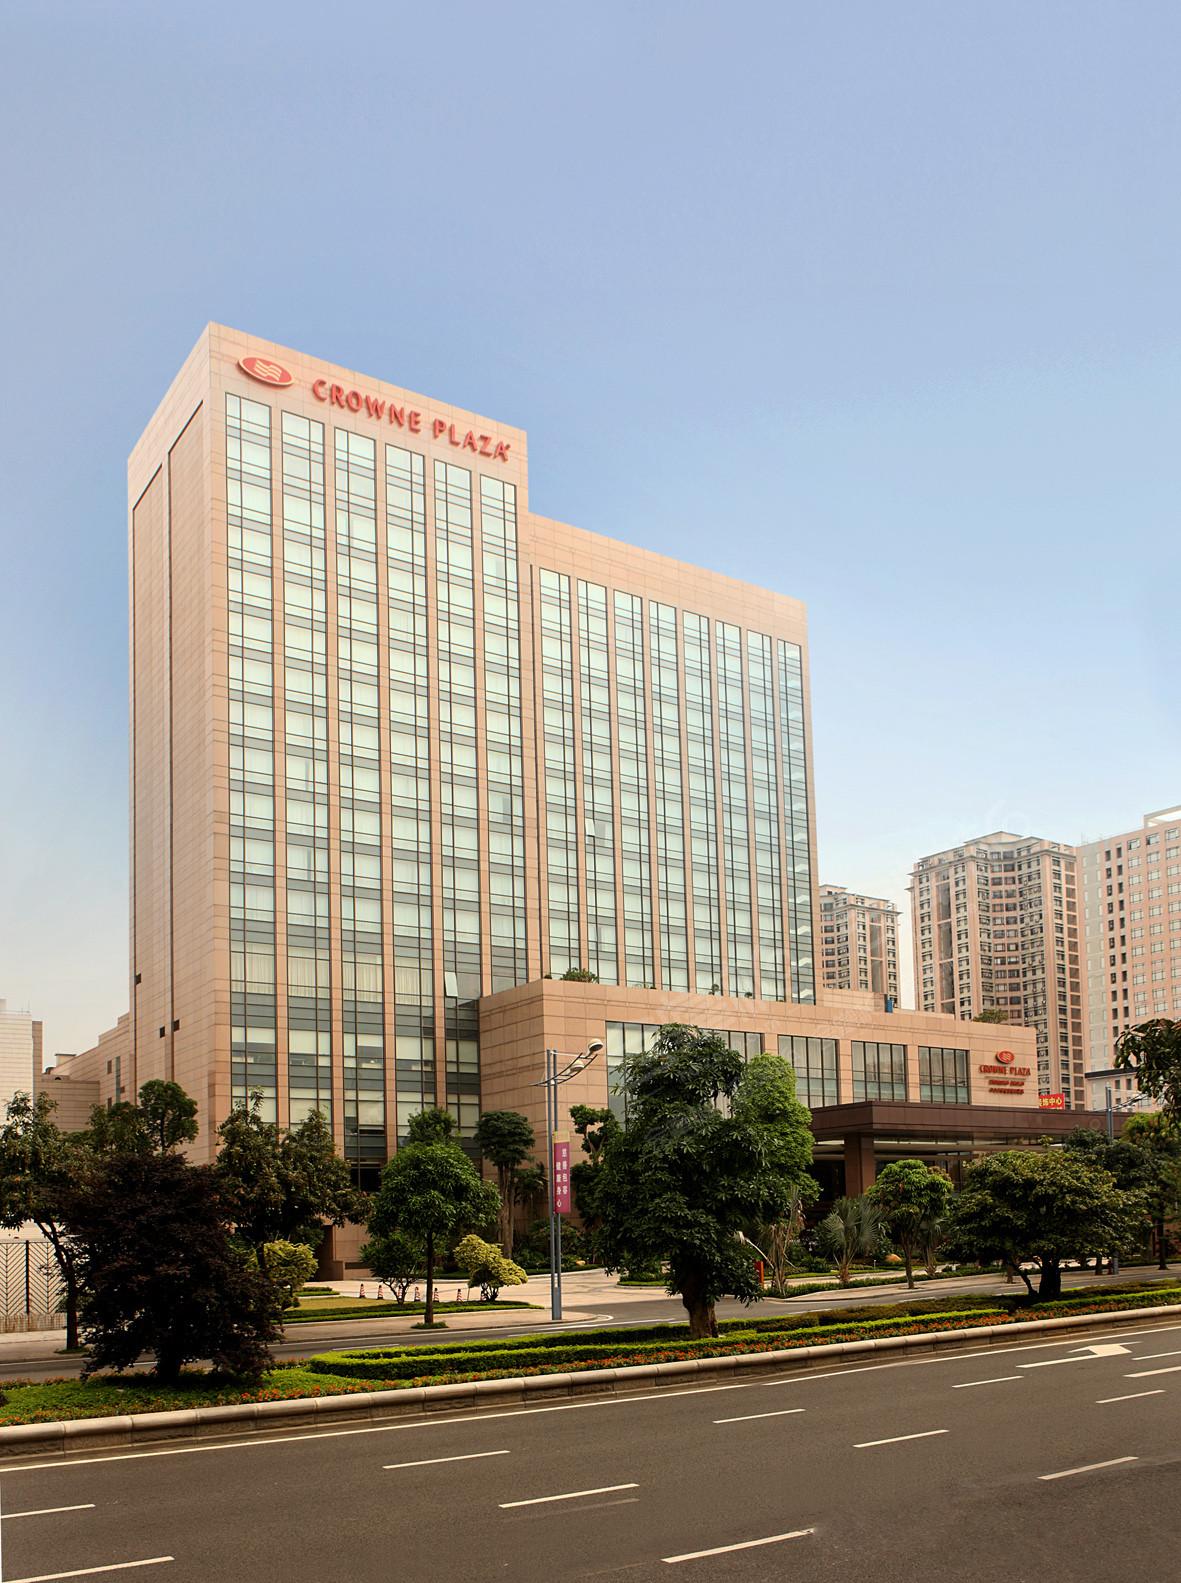 中山五星级酒店最大容纳600人的会议场地|中山大信皇冠假日酒店的价格与联系方式